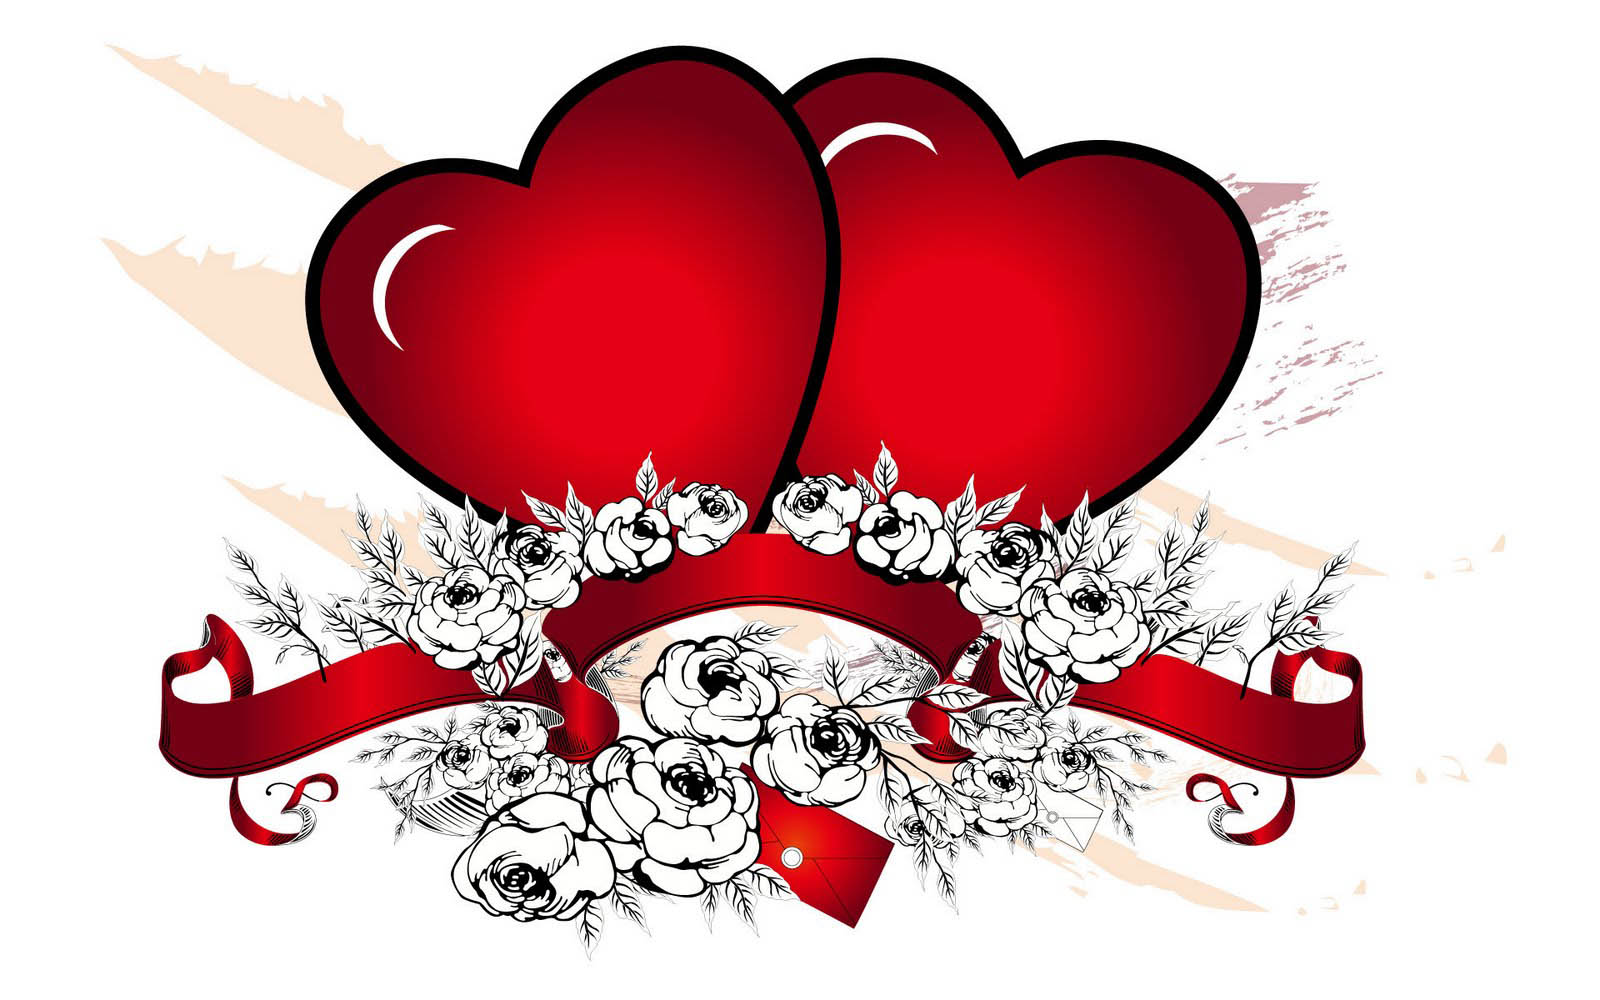 사랑의 심장 벽지,심장,빨간,사랑,발렌타인 데이,심장